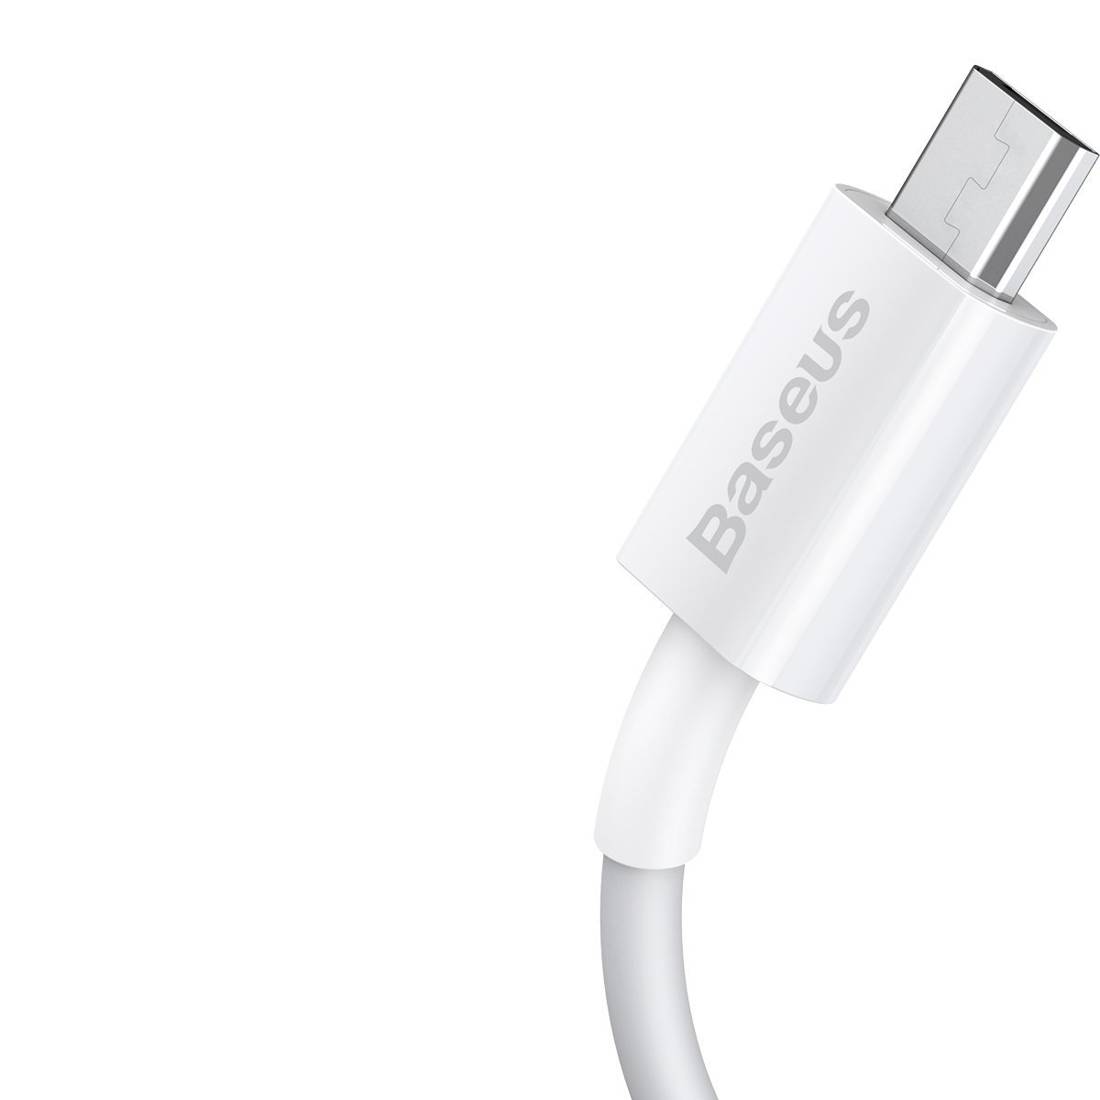 Baseus Cable Superior - USB to Micro USB - 2A 2 metres (CAMYS-A02